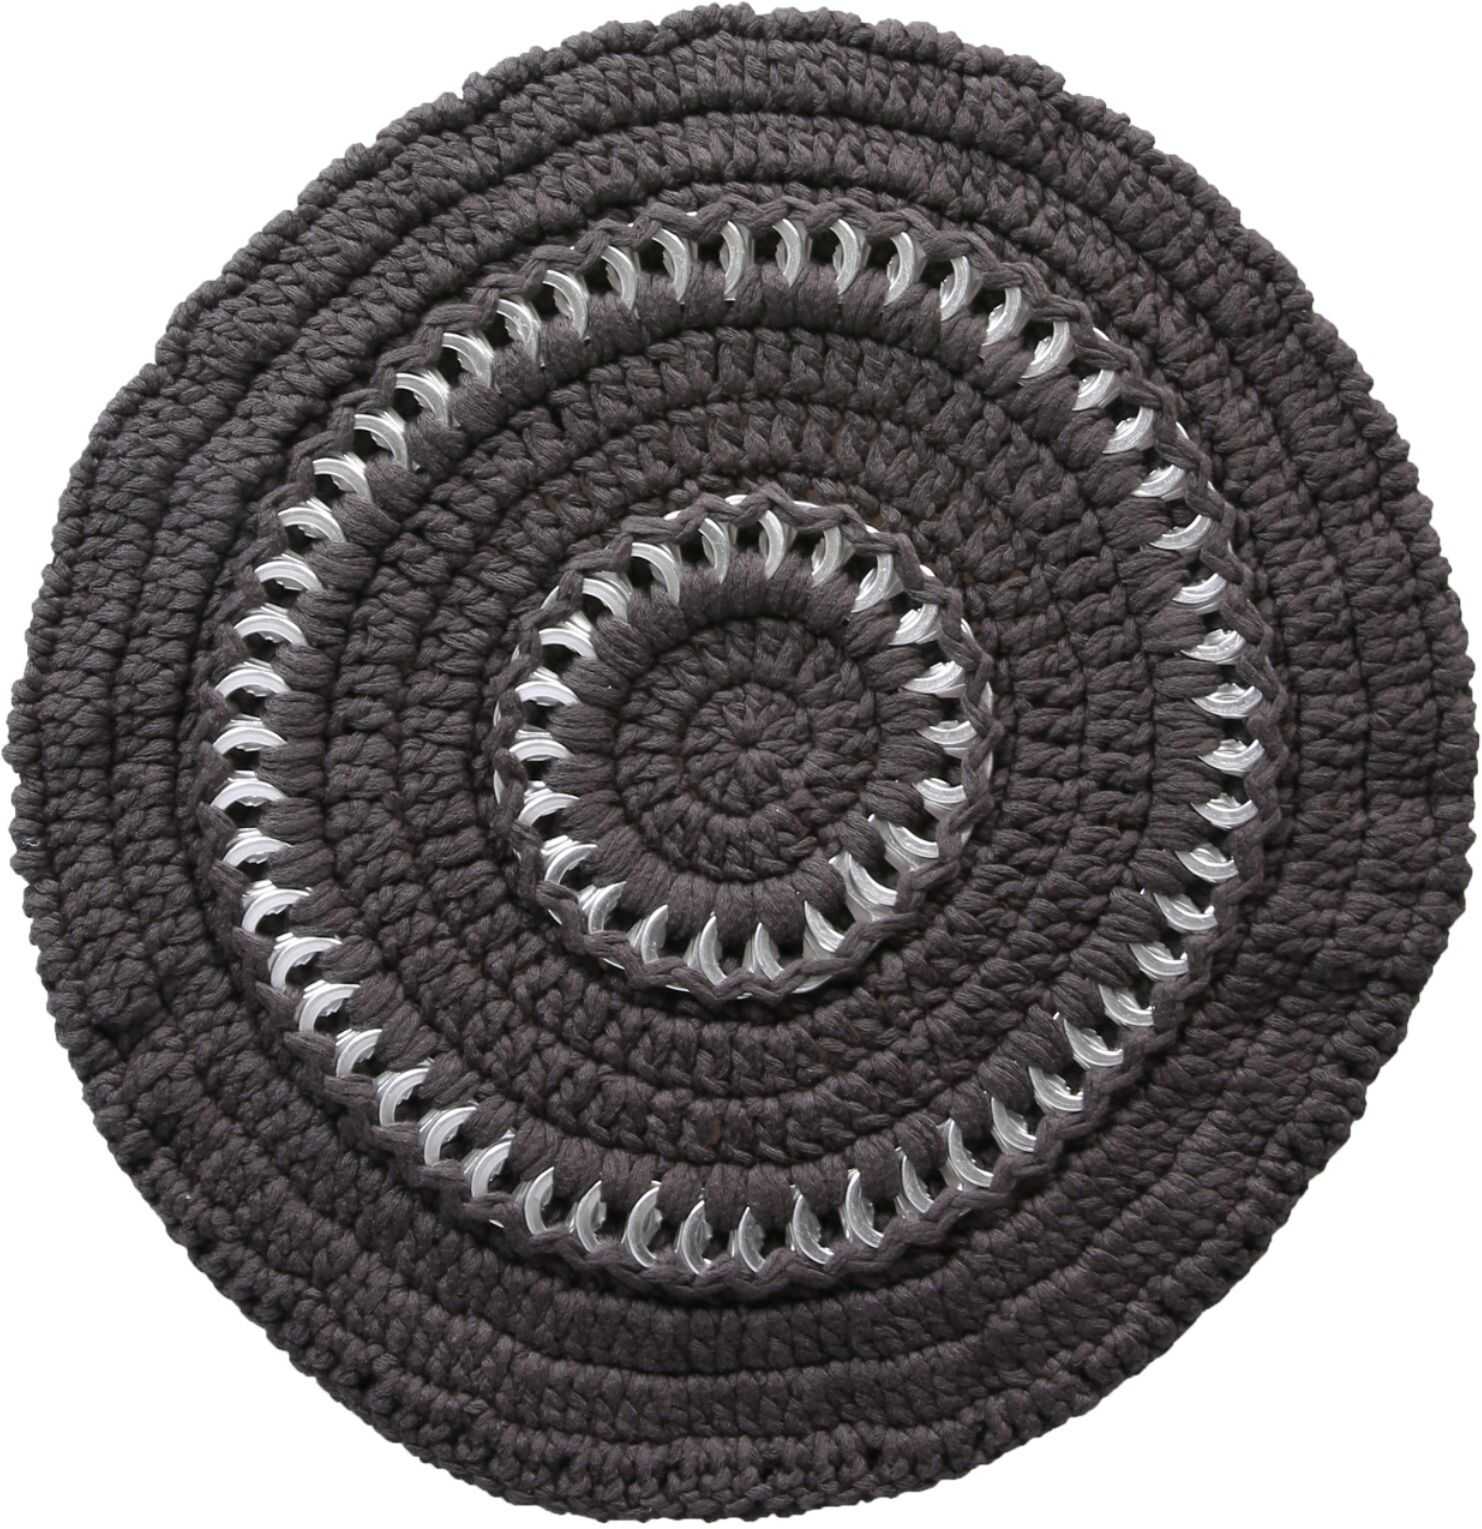 Ganni Crochet Knit Hat GREY